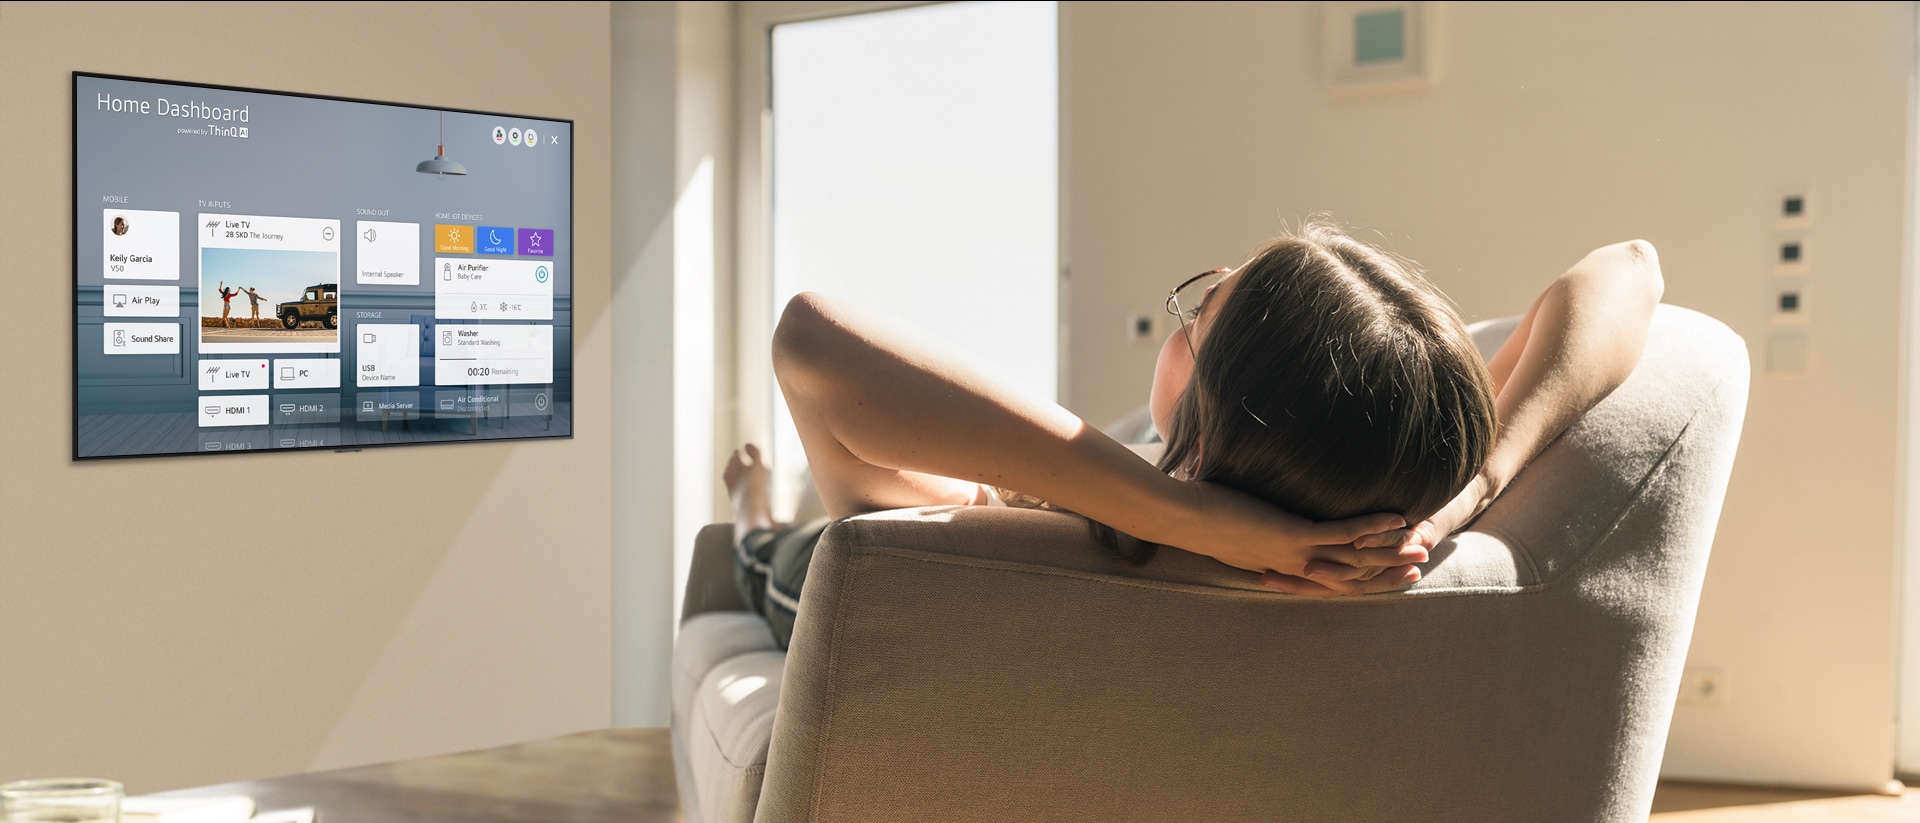 Une femme sur un canapé demandant au téléviseur de baisser la température avec l’écran d’accueil sur l’écran du téléviseur